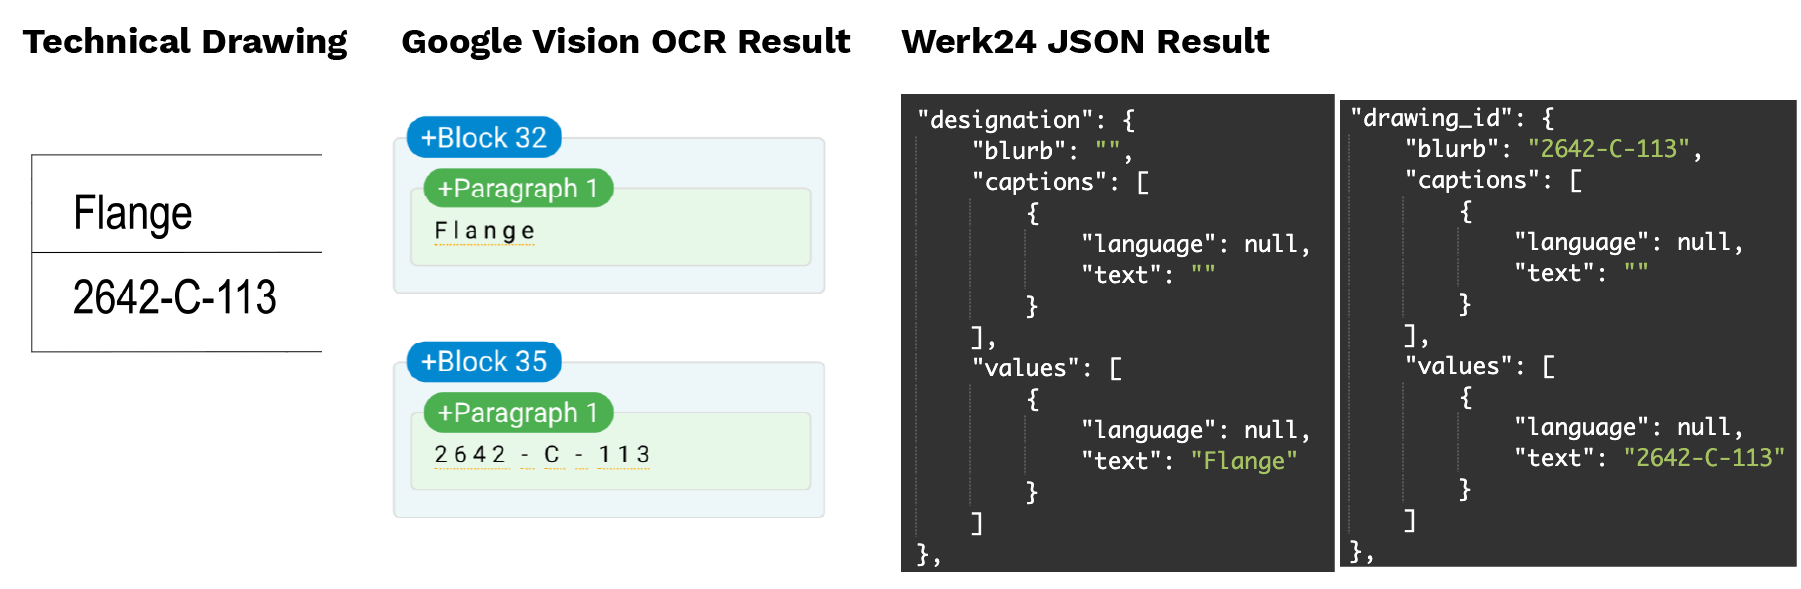 Comparaison des blocs-titres des dessins techniques entre Google Vision OCR et Werk24 JSON